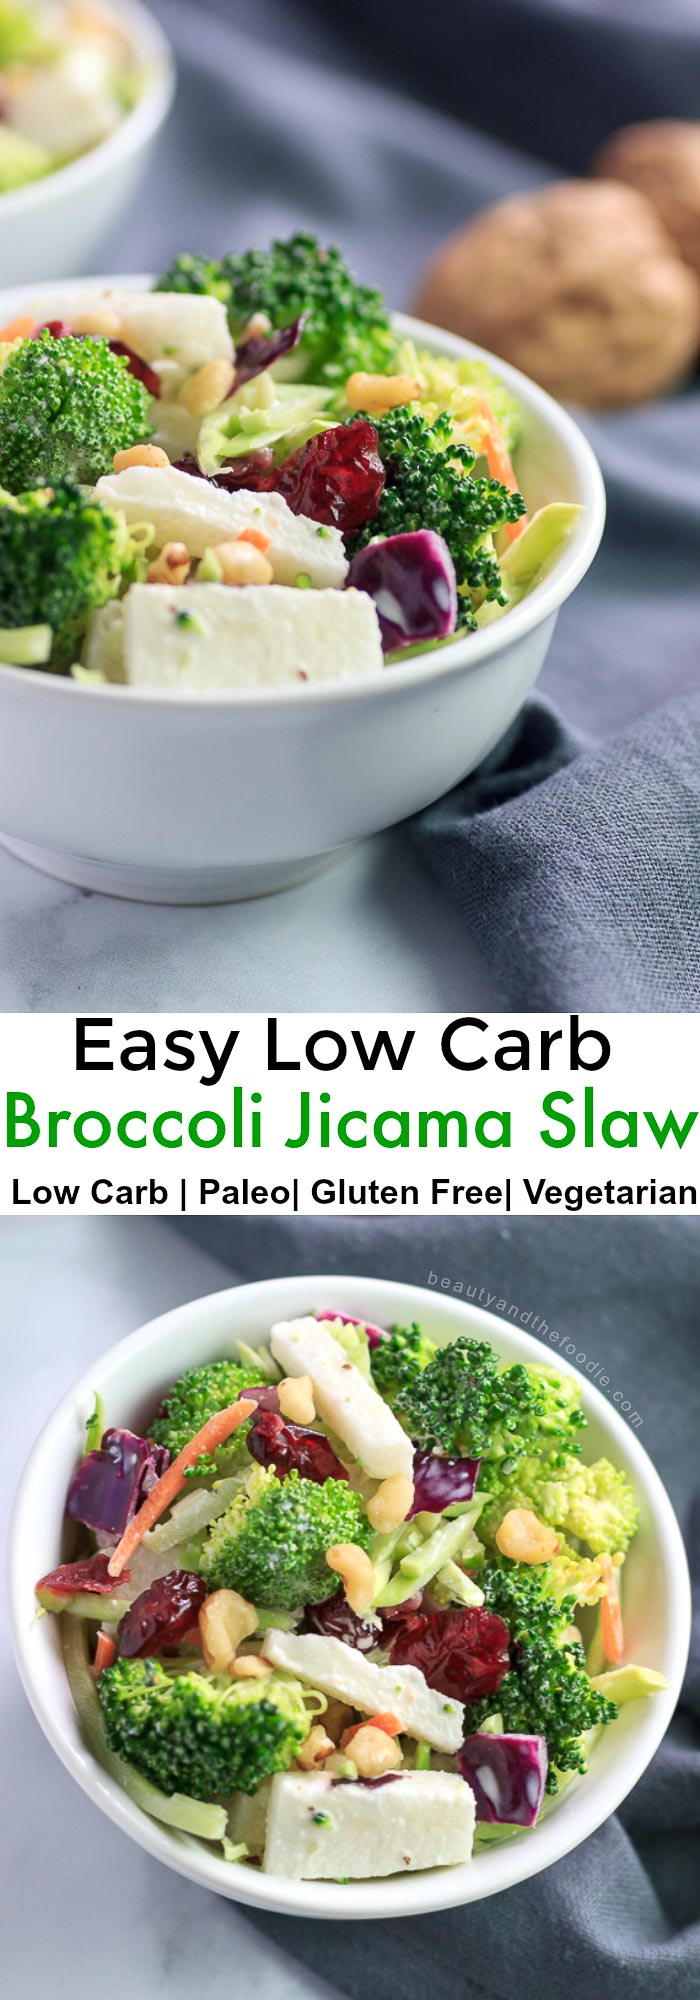 Broccoli Jicama Slaw Low Carb & Paleo